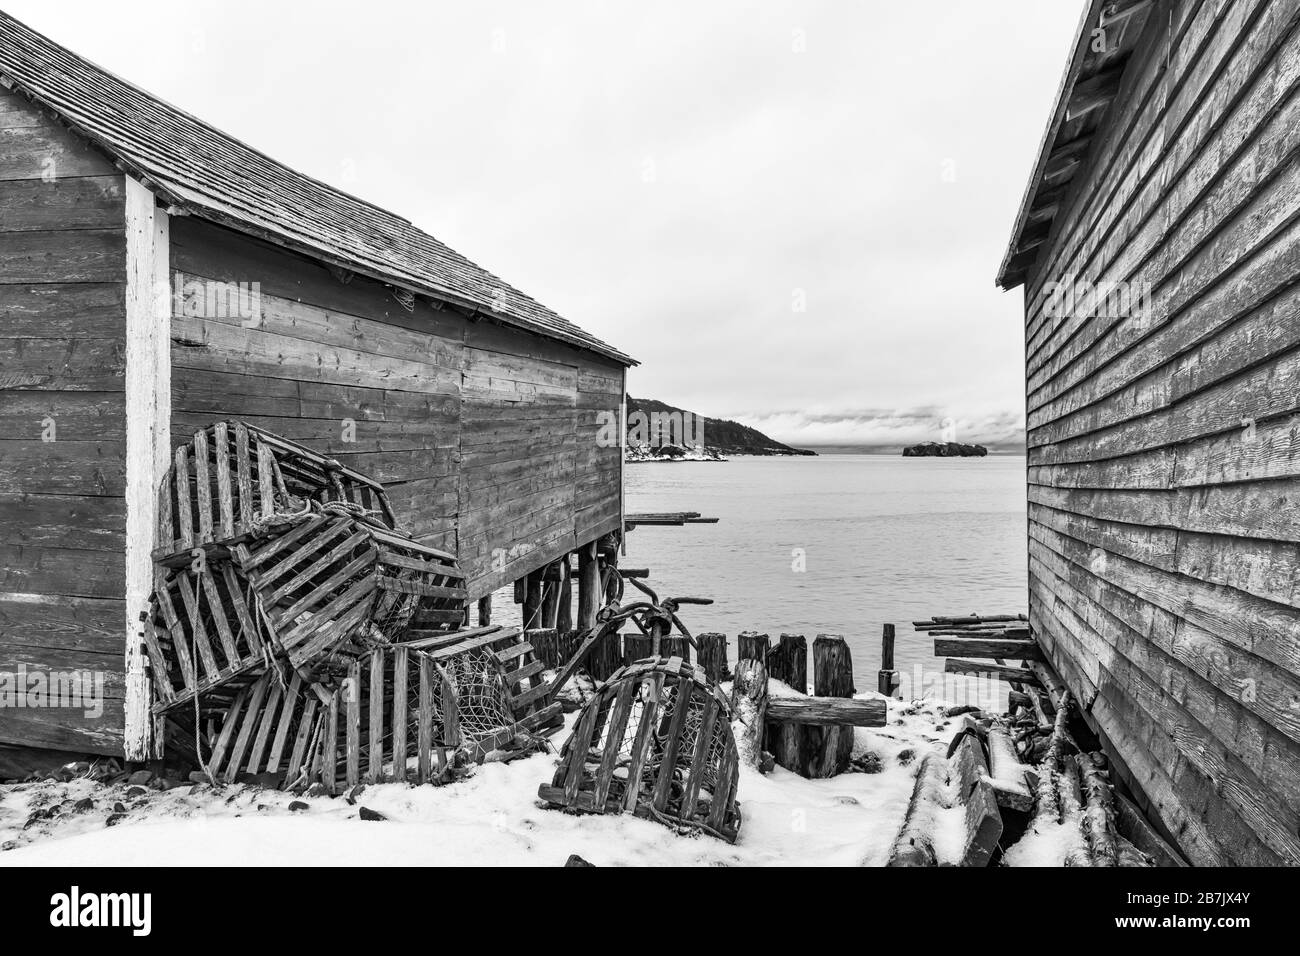 Étapes, utilisées pour la maison de matériel de pêche et pour traiter les appâts et les poissons, avec des homards, dans l'ancien village de pêche de Dunfield à Terre-Neuve, Canada [ Banque D'Images